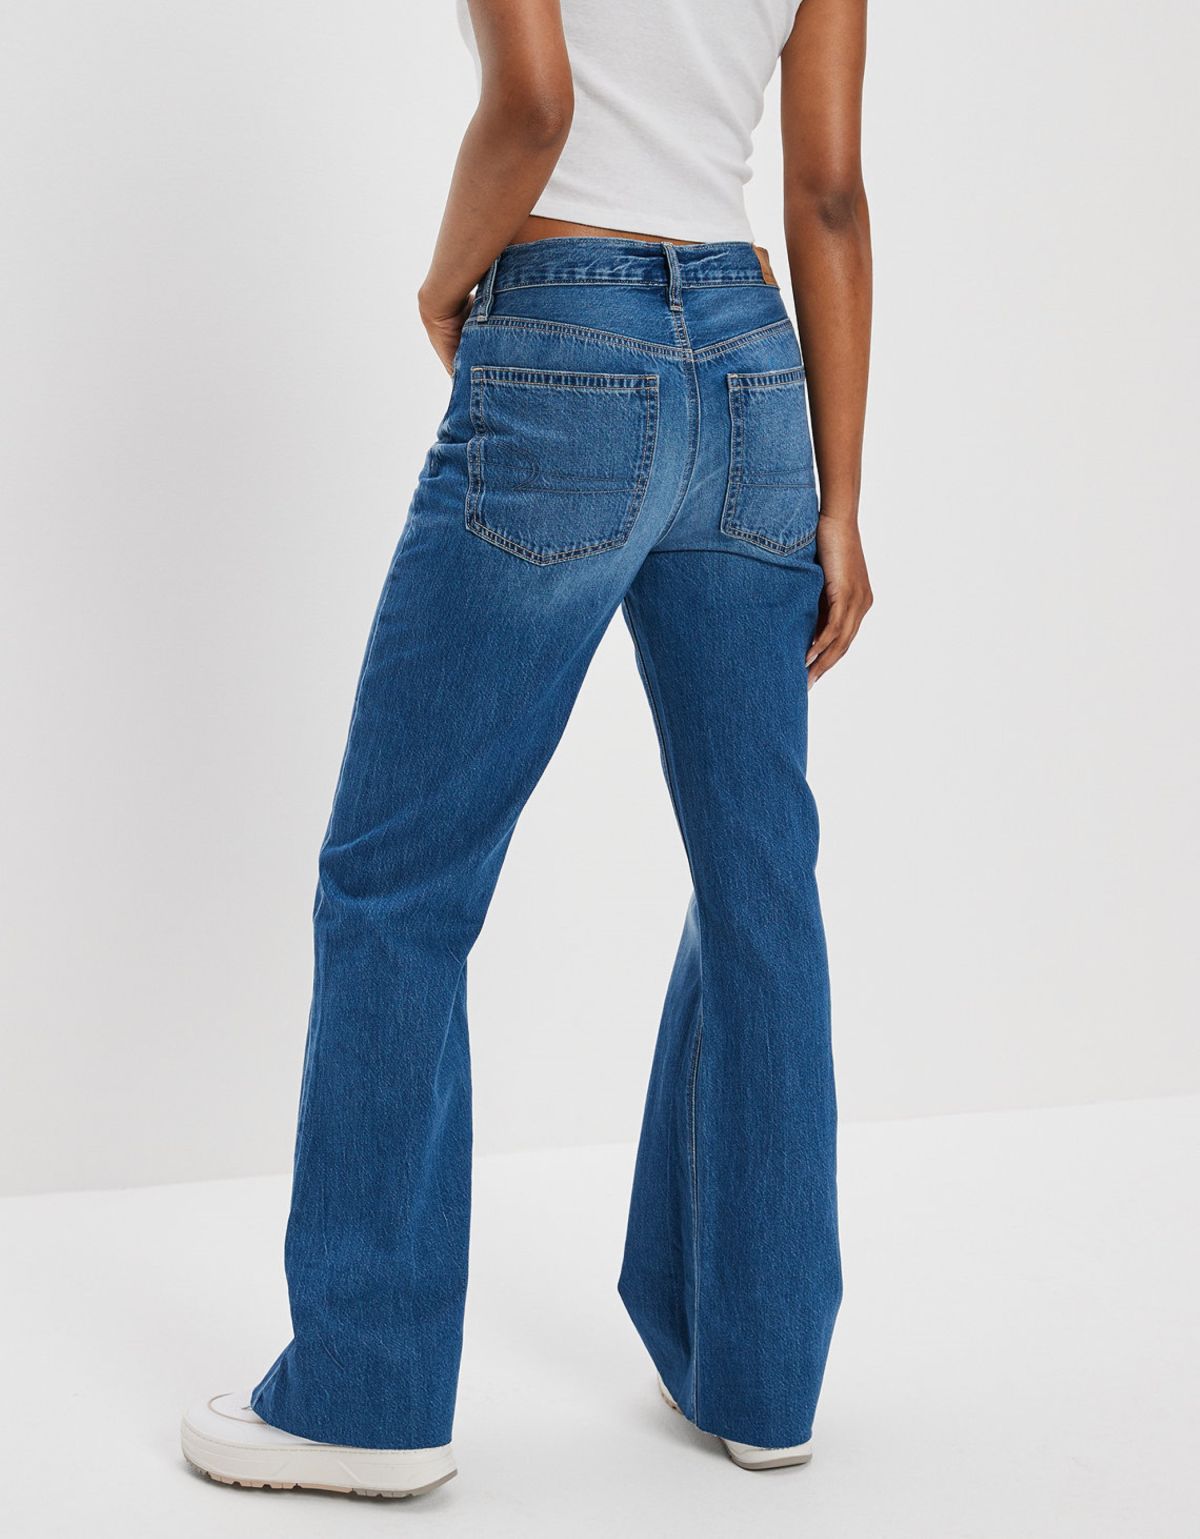  ג'ינס בגזרה מתרחבת של AMERICAN EAGLE